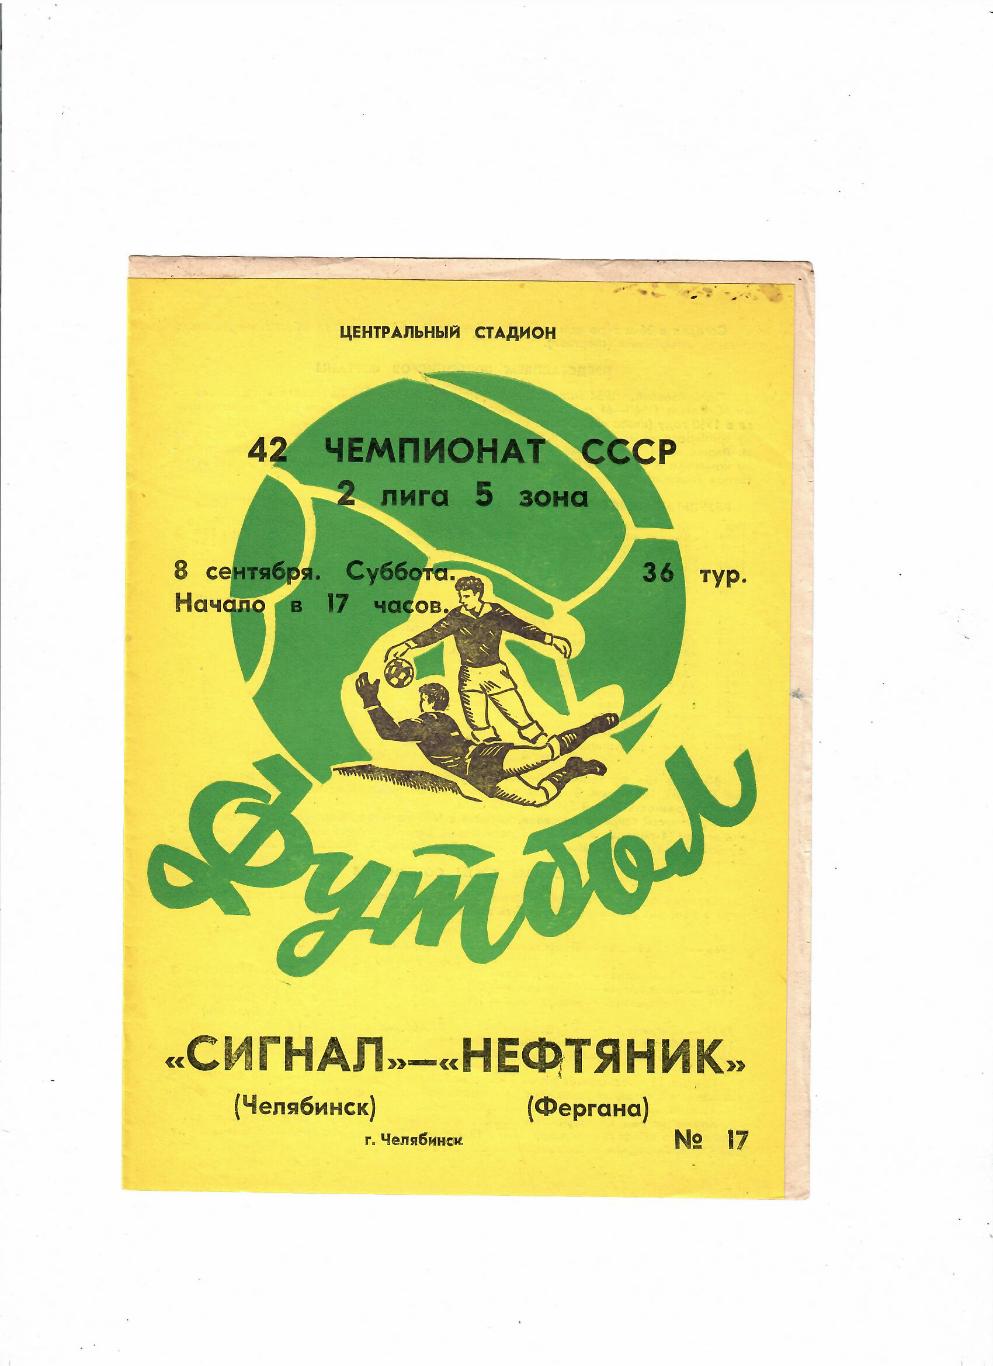 Сигнал Челябинск-Нефтяник Фергана 1979